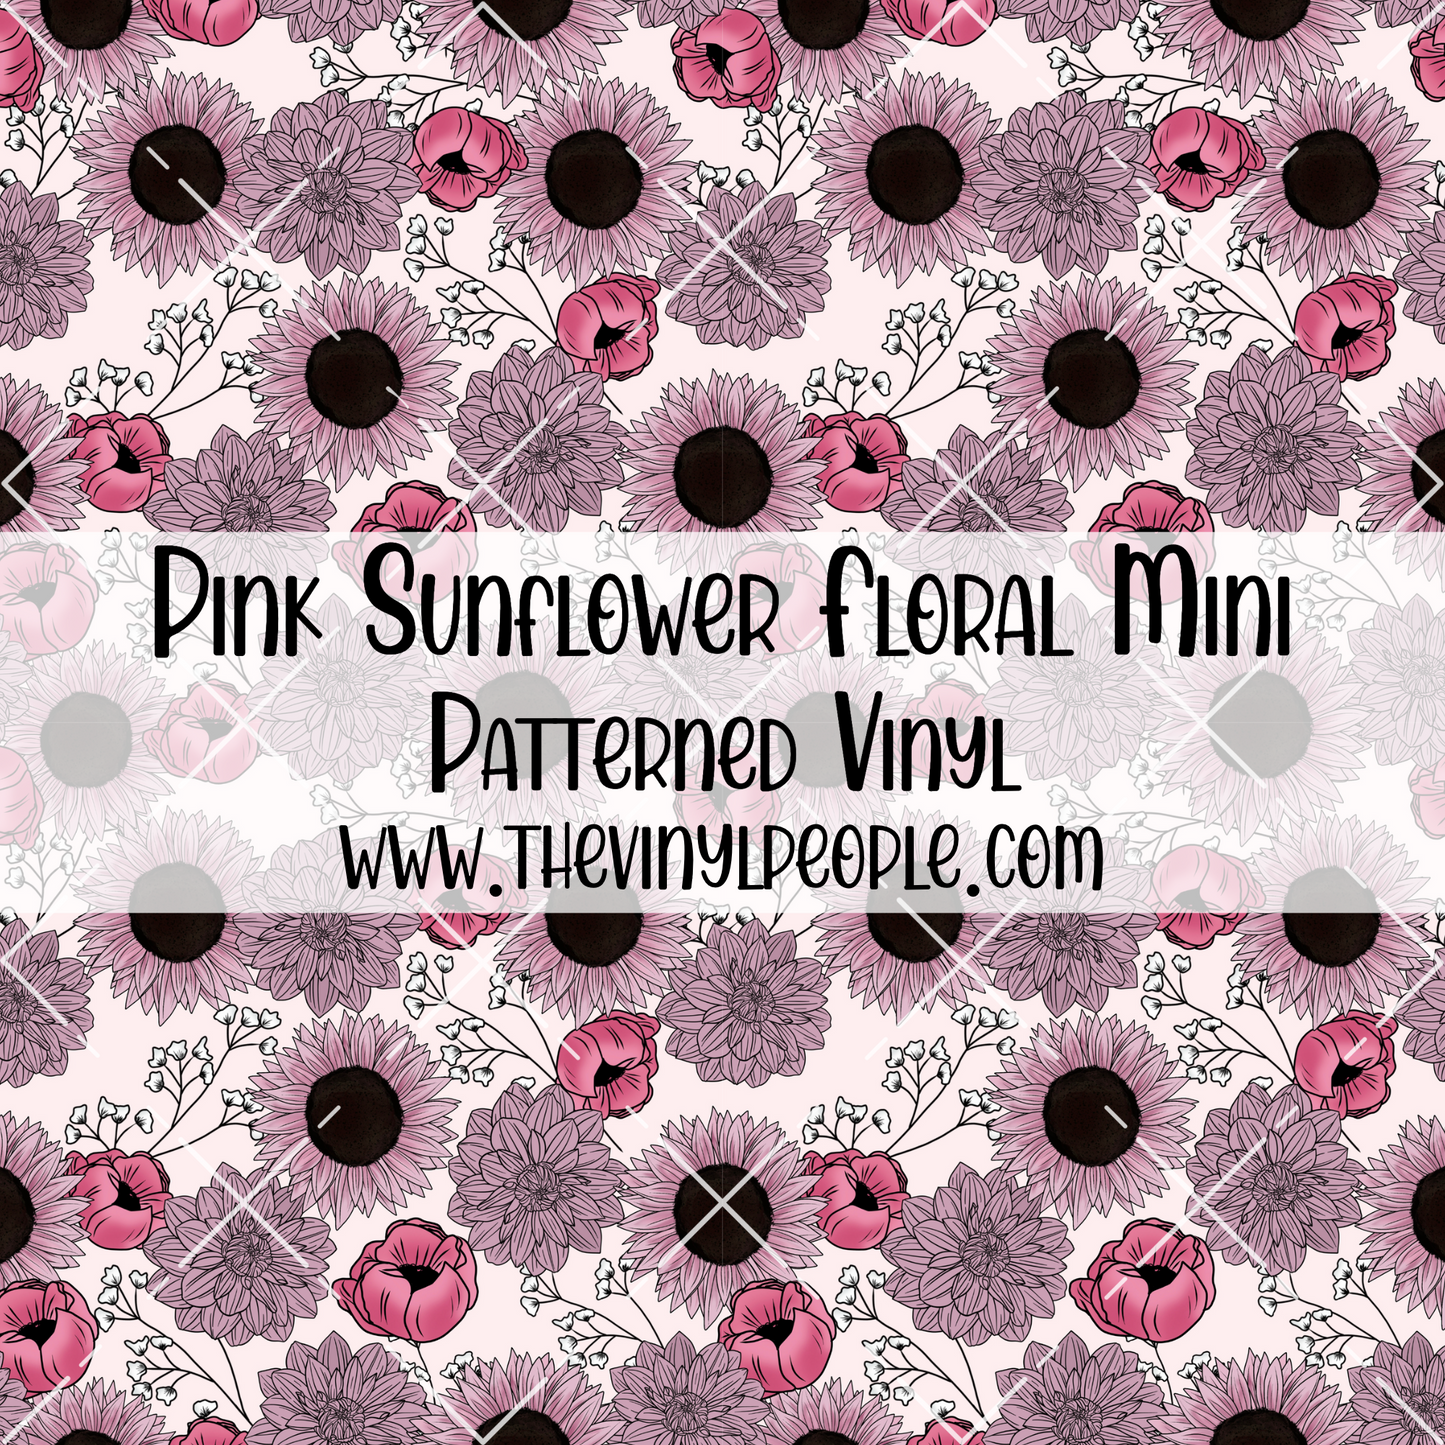 Pink Sunflower Floral Patterned Vinyl